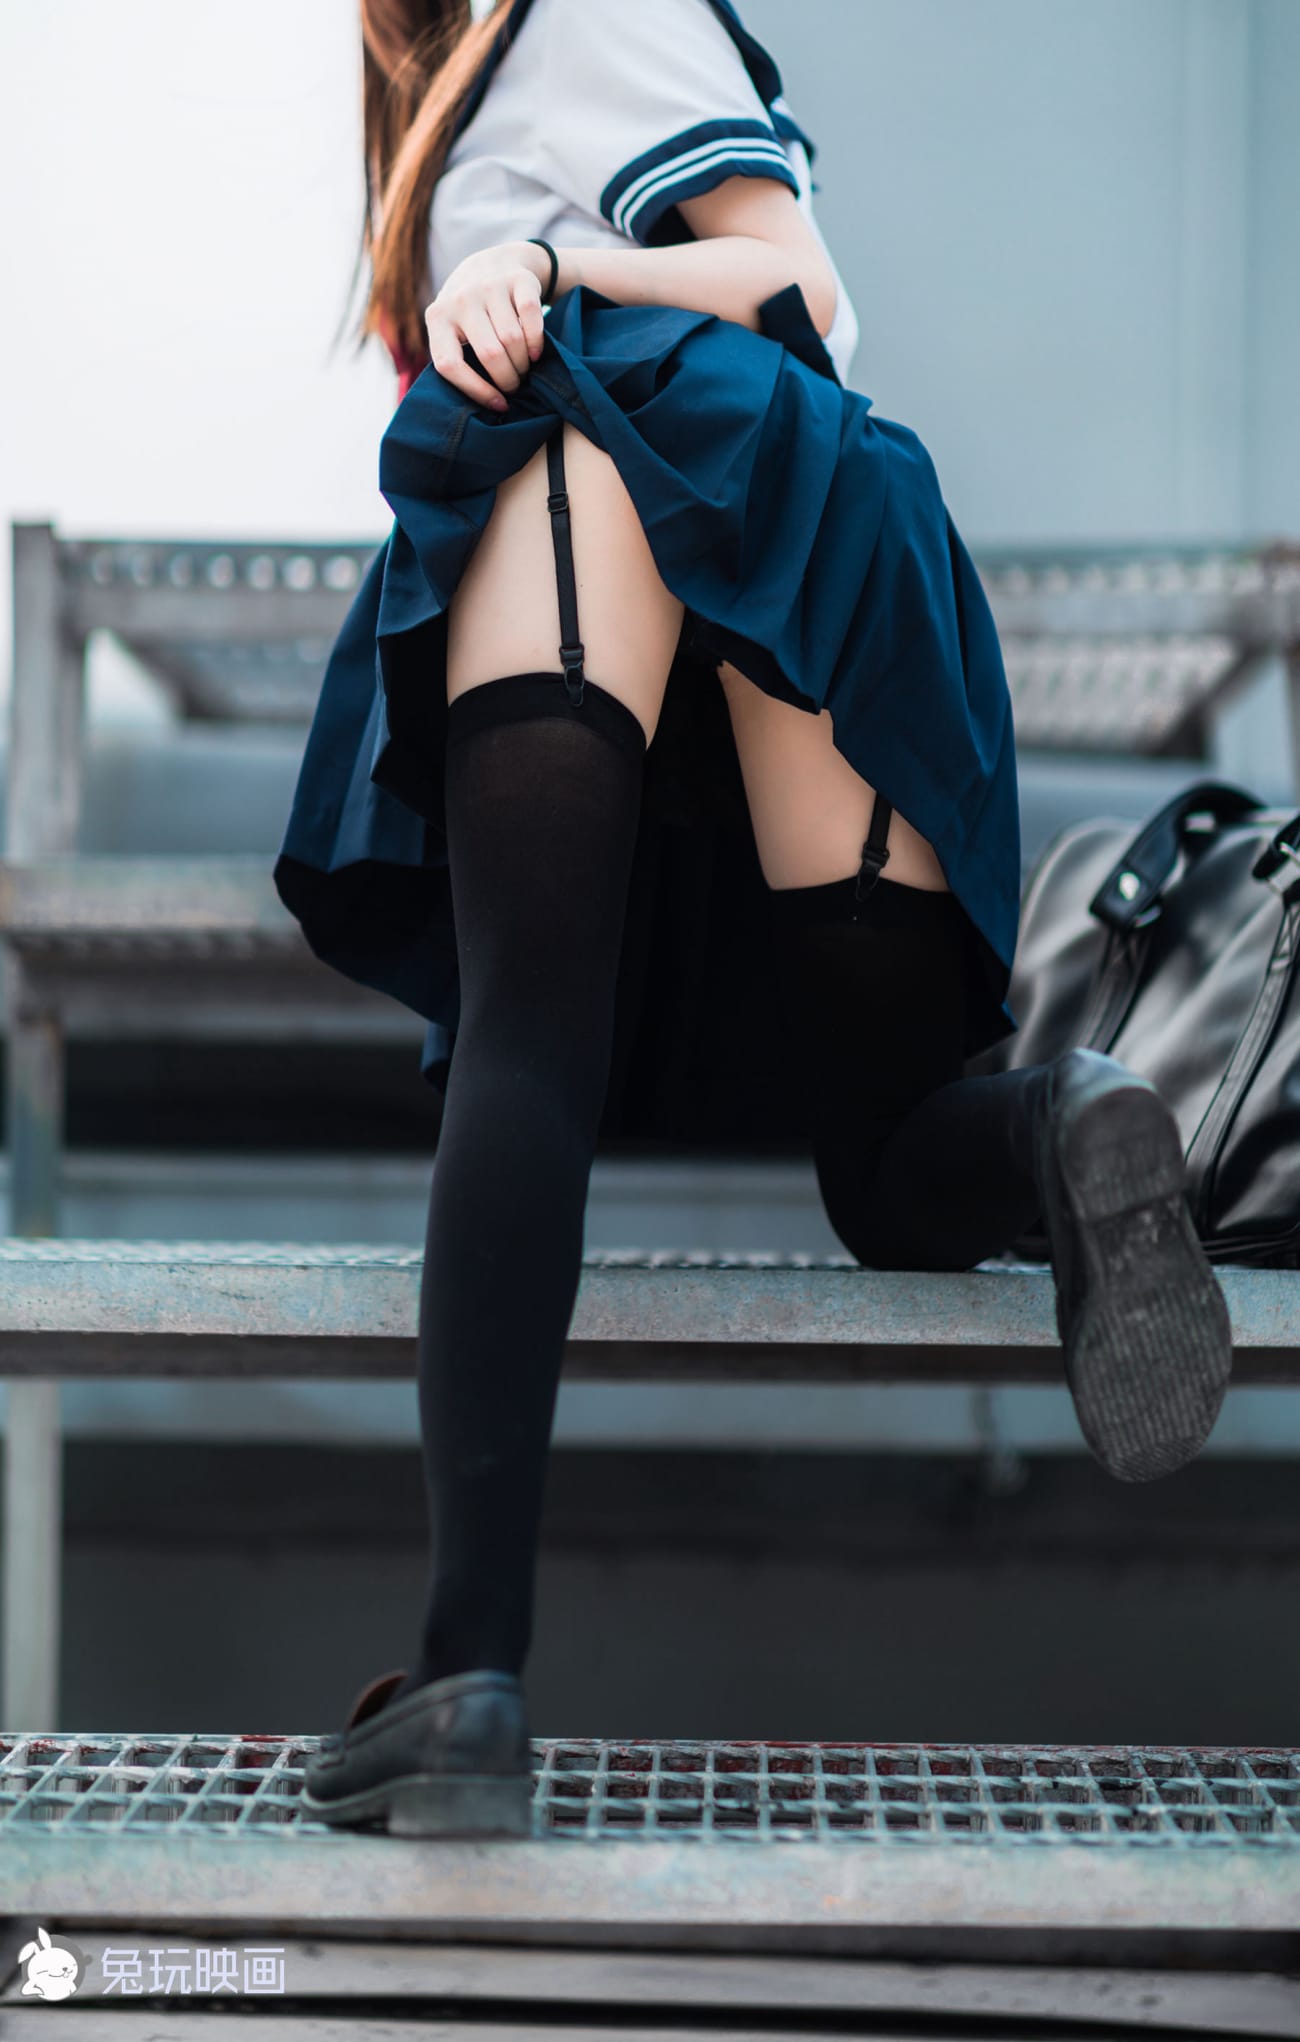 天台少女JK制服搭配黑色丝袜户外氧气写真